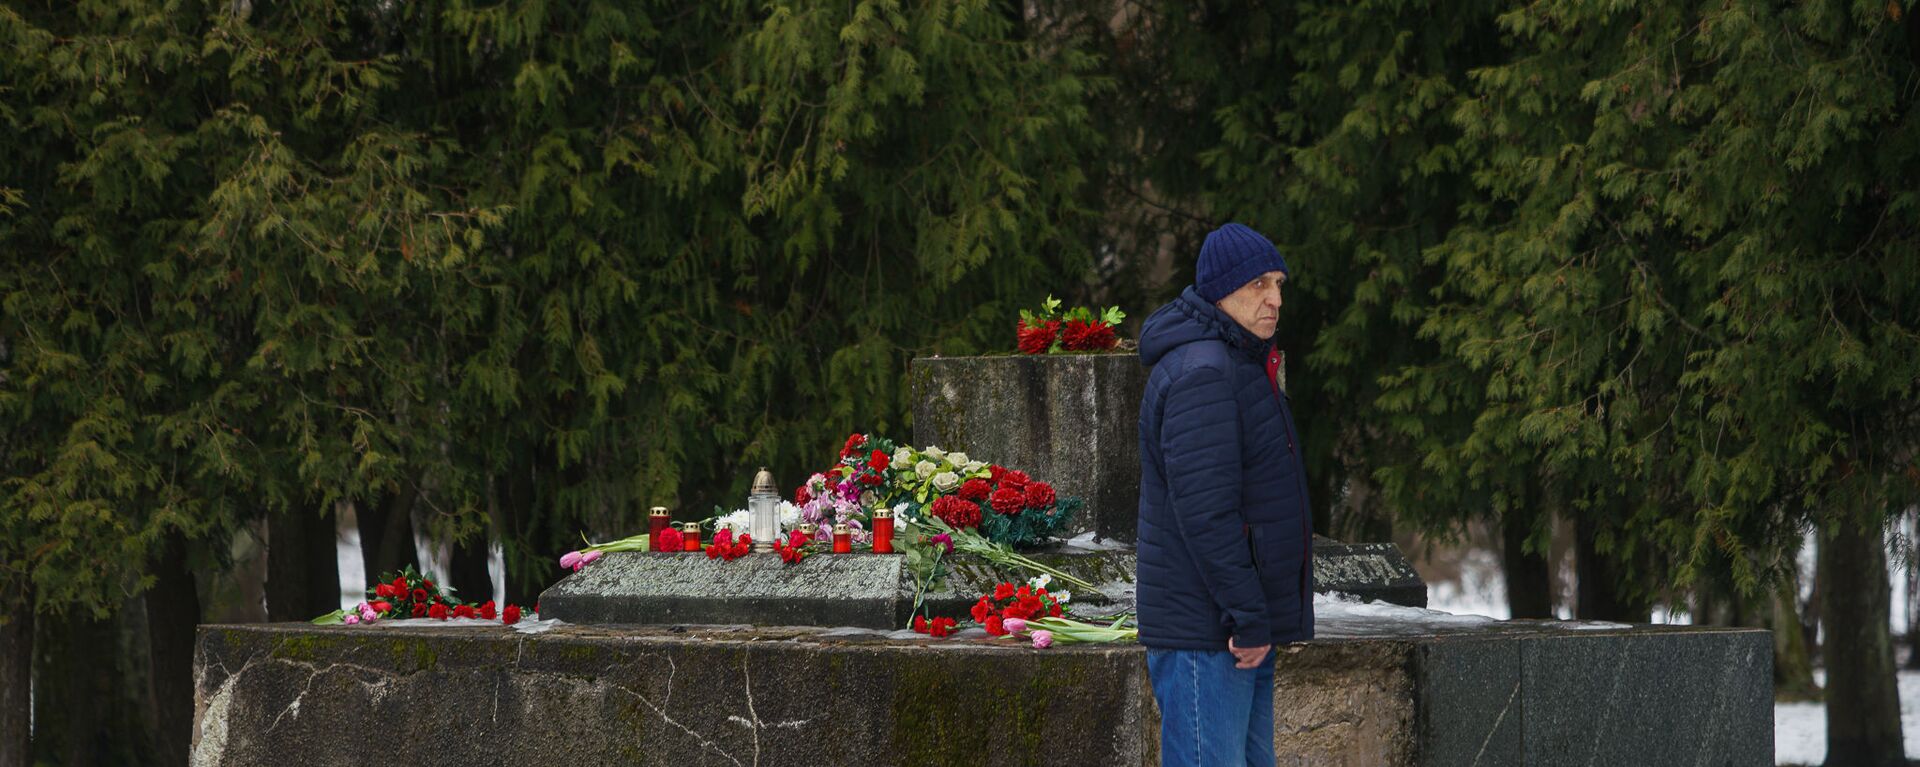 В ночь на 24 февраля в Екабпилсе вандалы украли пушку ЗиС-3 с могилы героев-освободителей Екабпилса от нацистских захватчиков - Sputnik Latvija, 1920, 02.03.2021